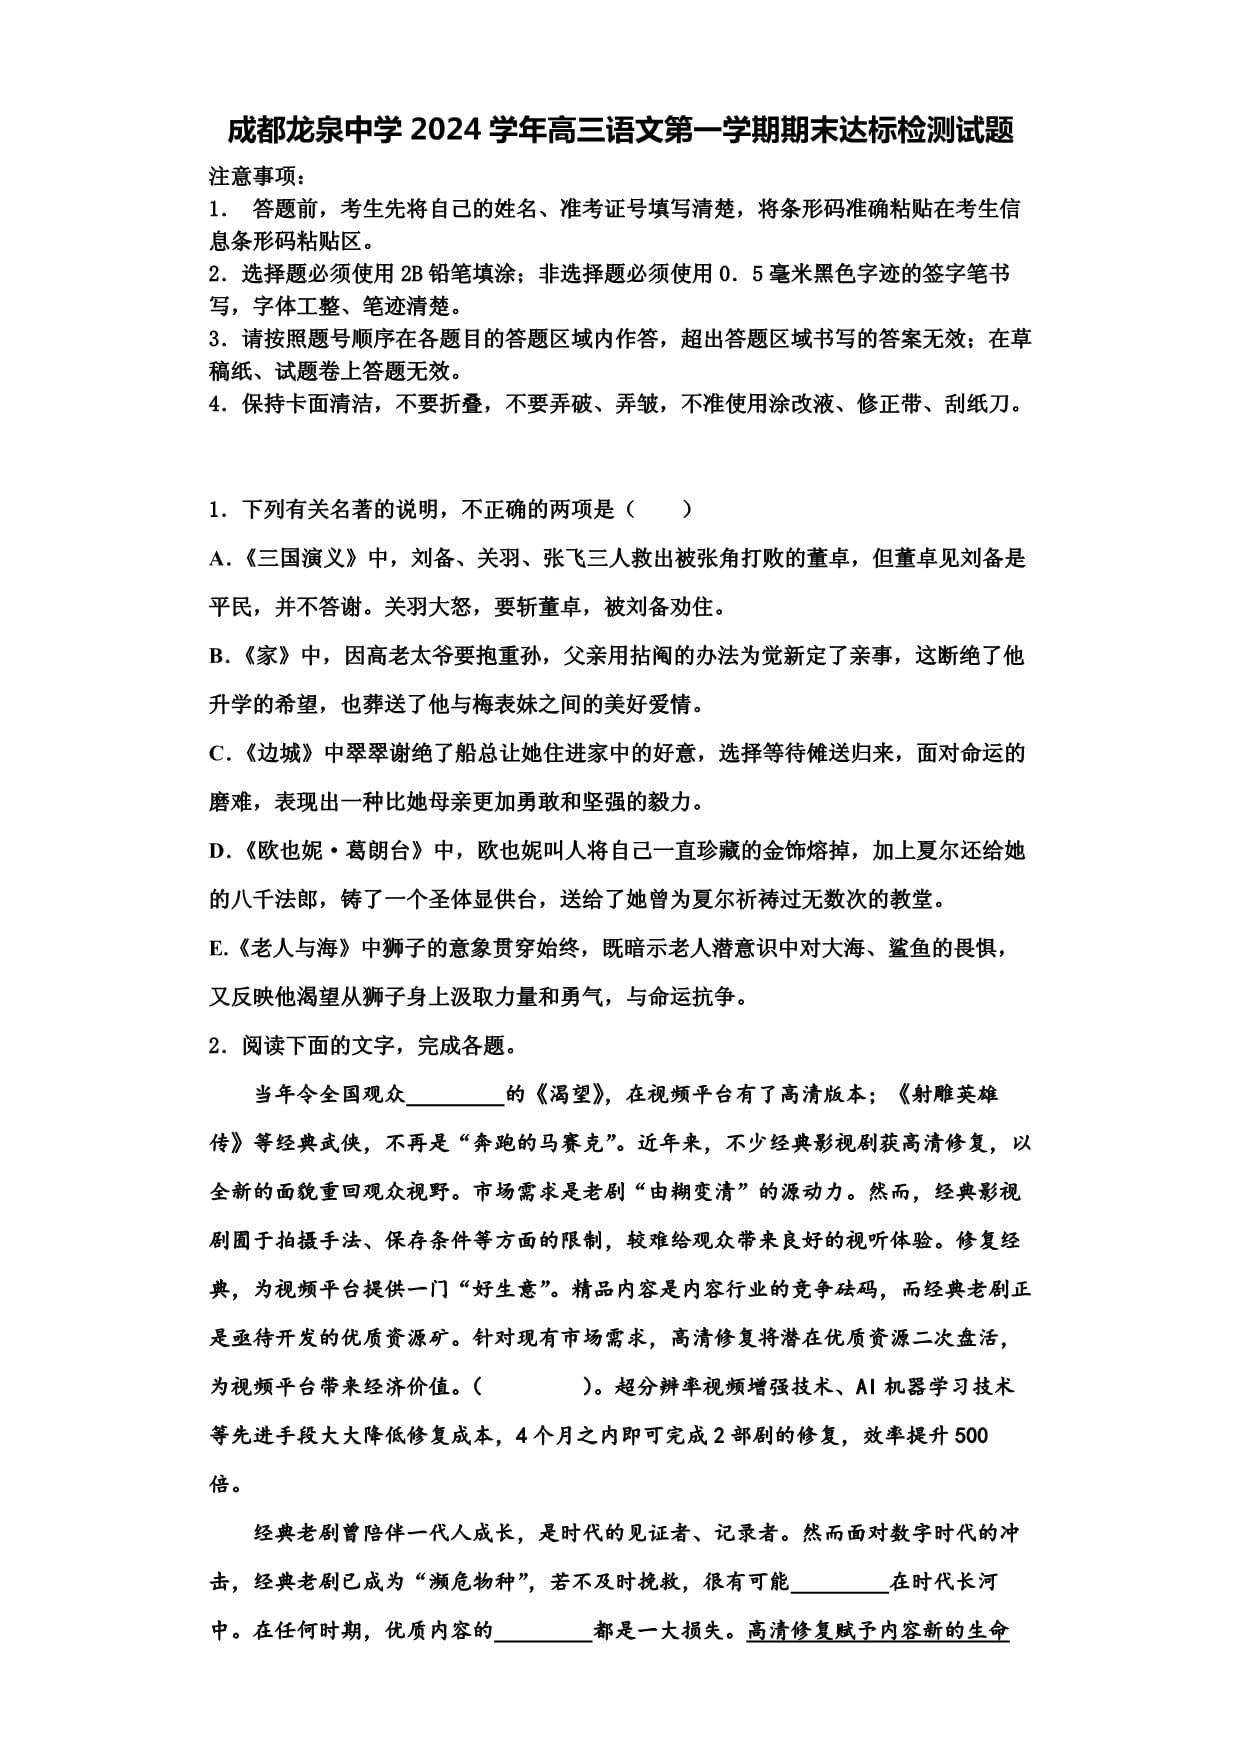 成都龙泉中学免费复读政策文件